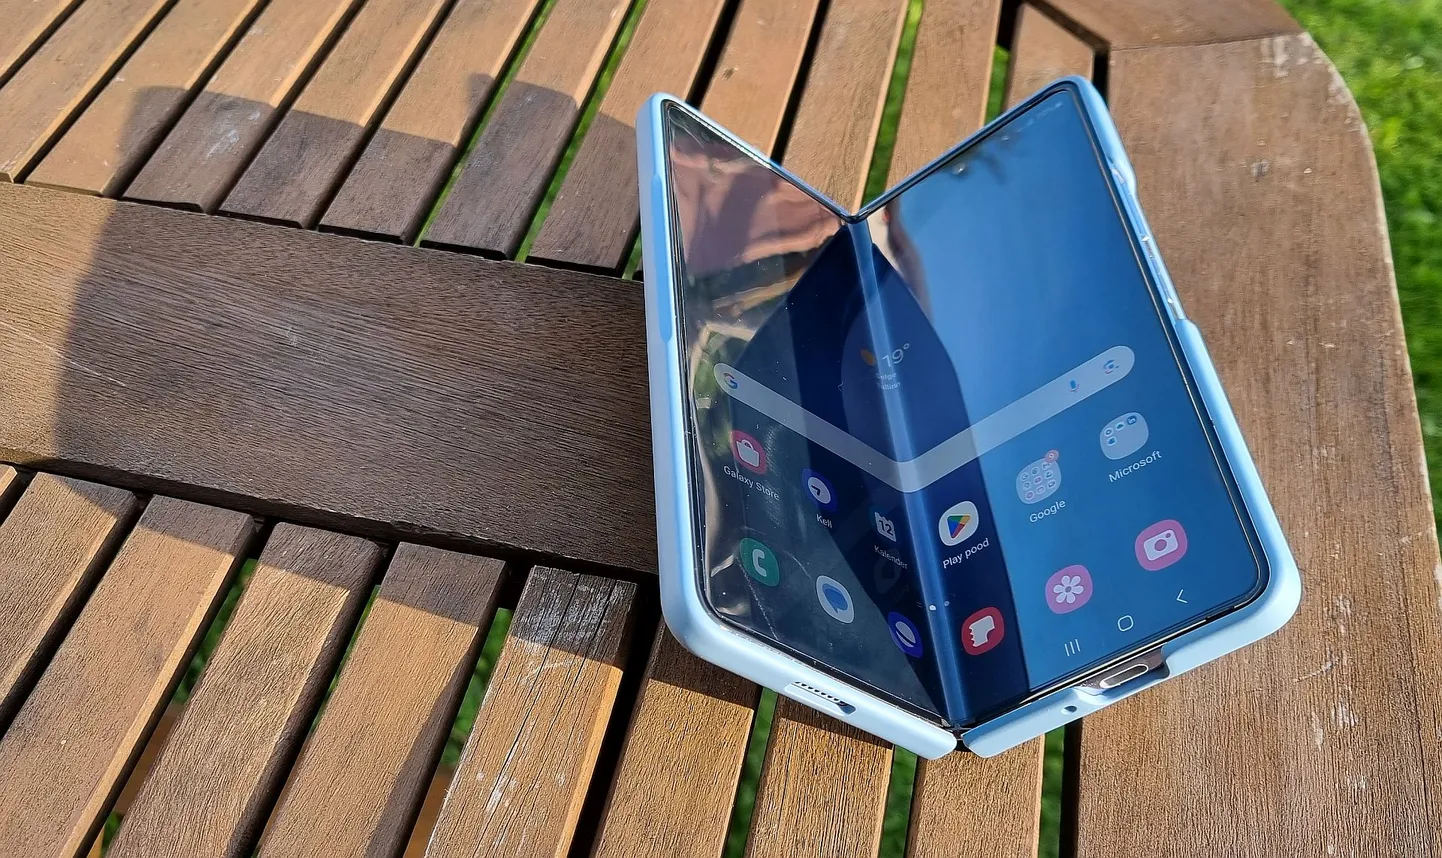 Voltida pikuti või risti? Kui tahad suure ekraaniga telefoni, mis töötab ka tahvlina, siis vildi lahti Galaxy Fold5. teistpidi volditava ekraaniga telefon tuli Samsungil ka samal ajal välja - Flip5, kuid sellel saab tavalise ekraani poole väiksemaks voltida.